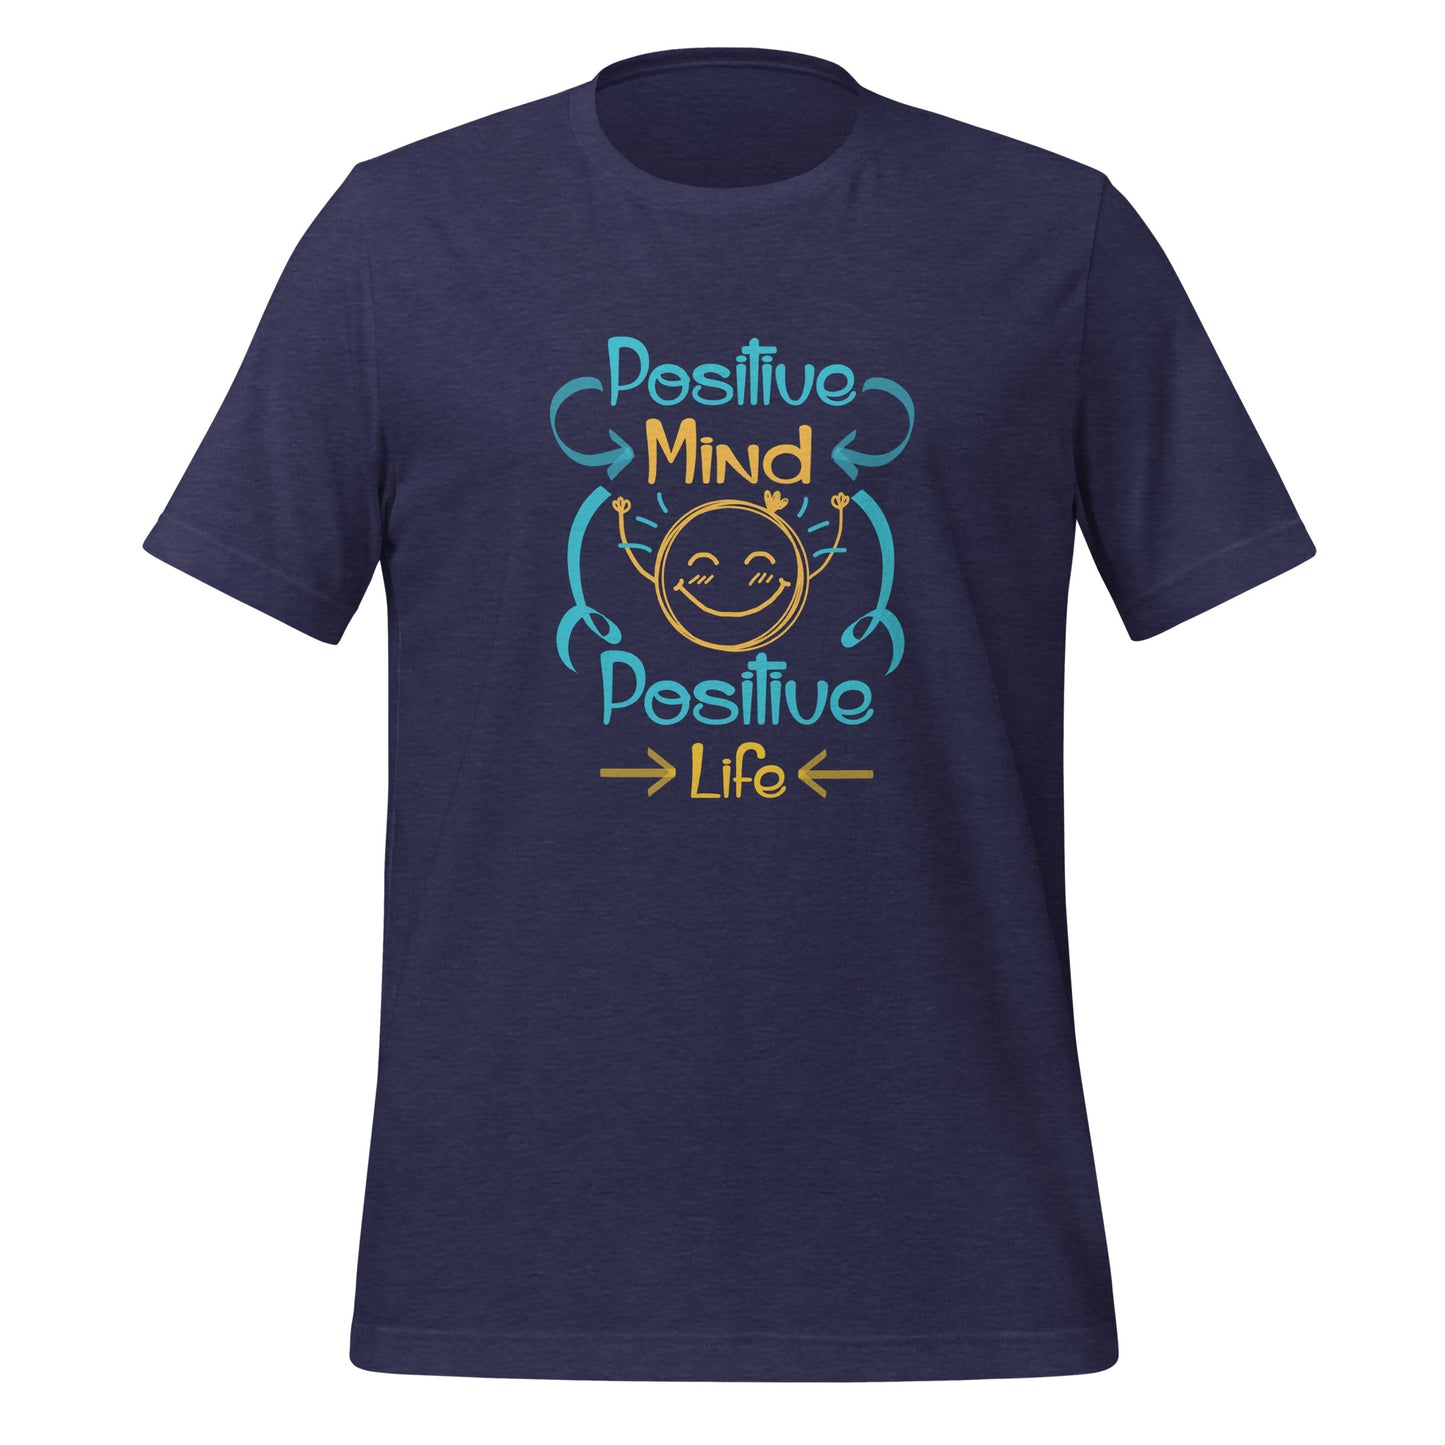 Camiseta unisex Mente Positiva Vida Positiva